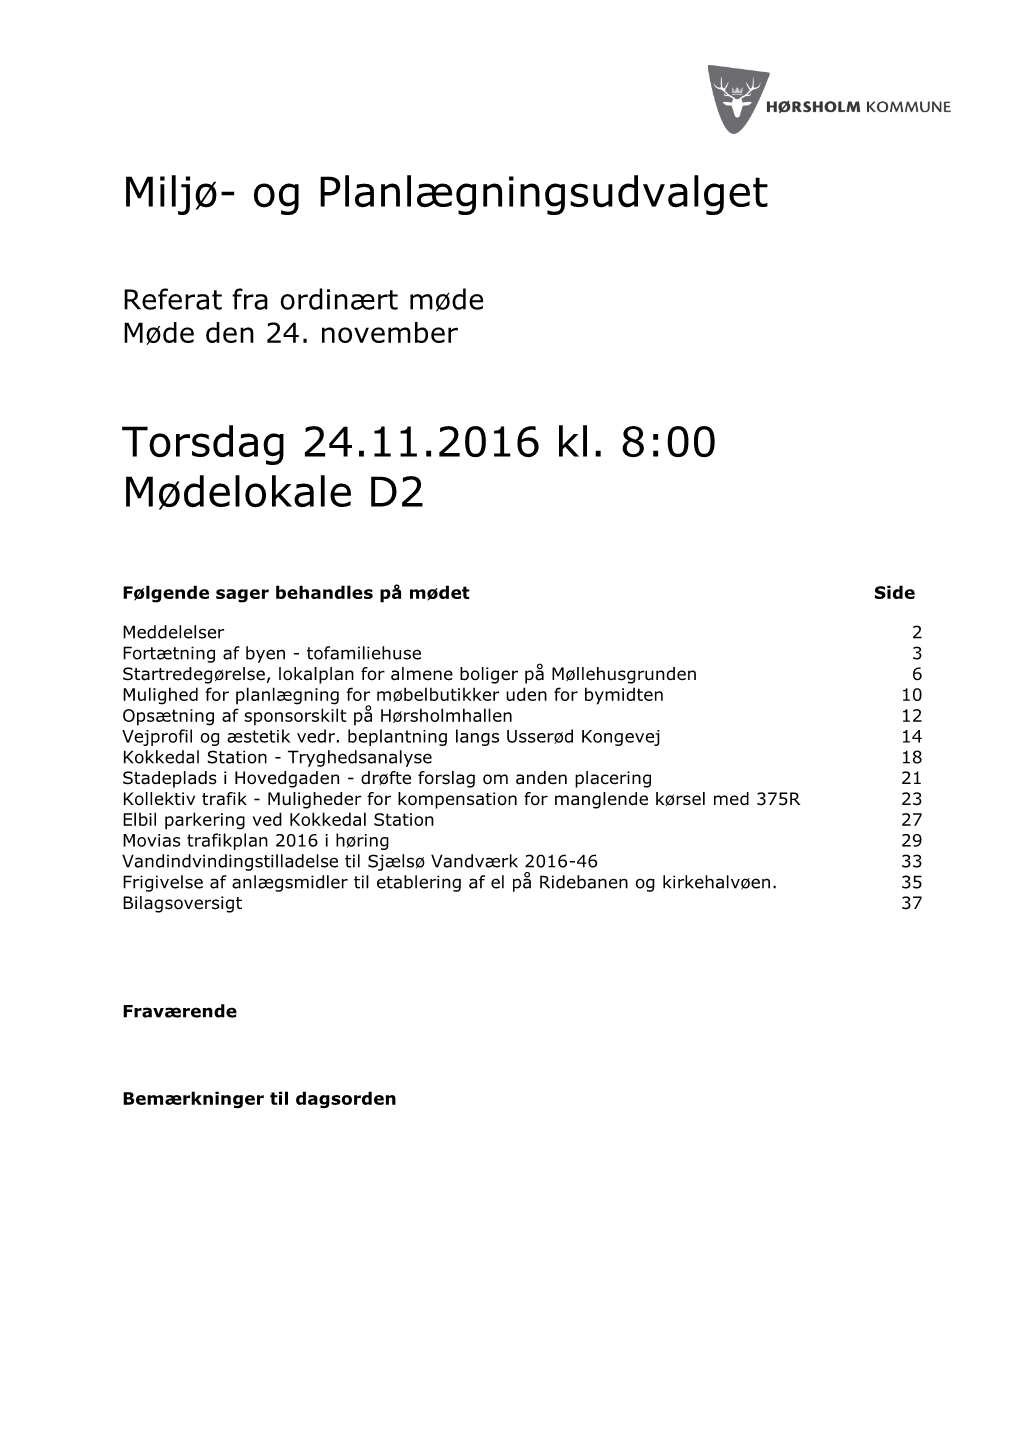 Miljø- Og Planlægningsudvalget Torsdag 24.11.2016 Kl. 8:00